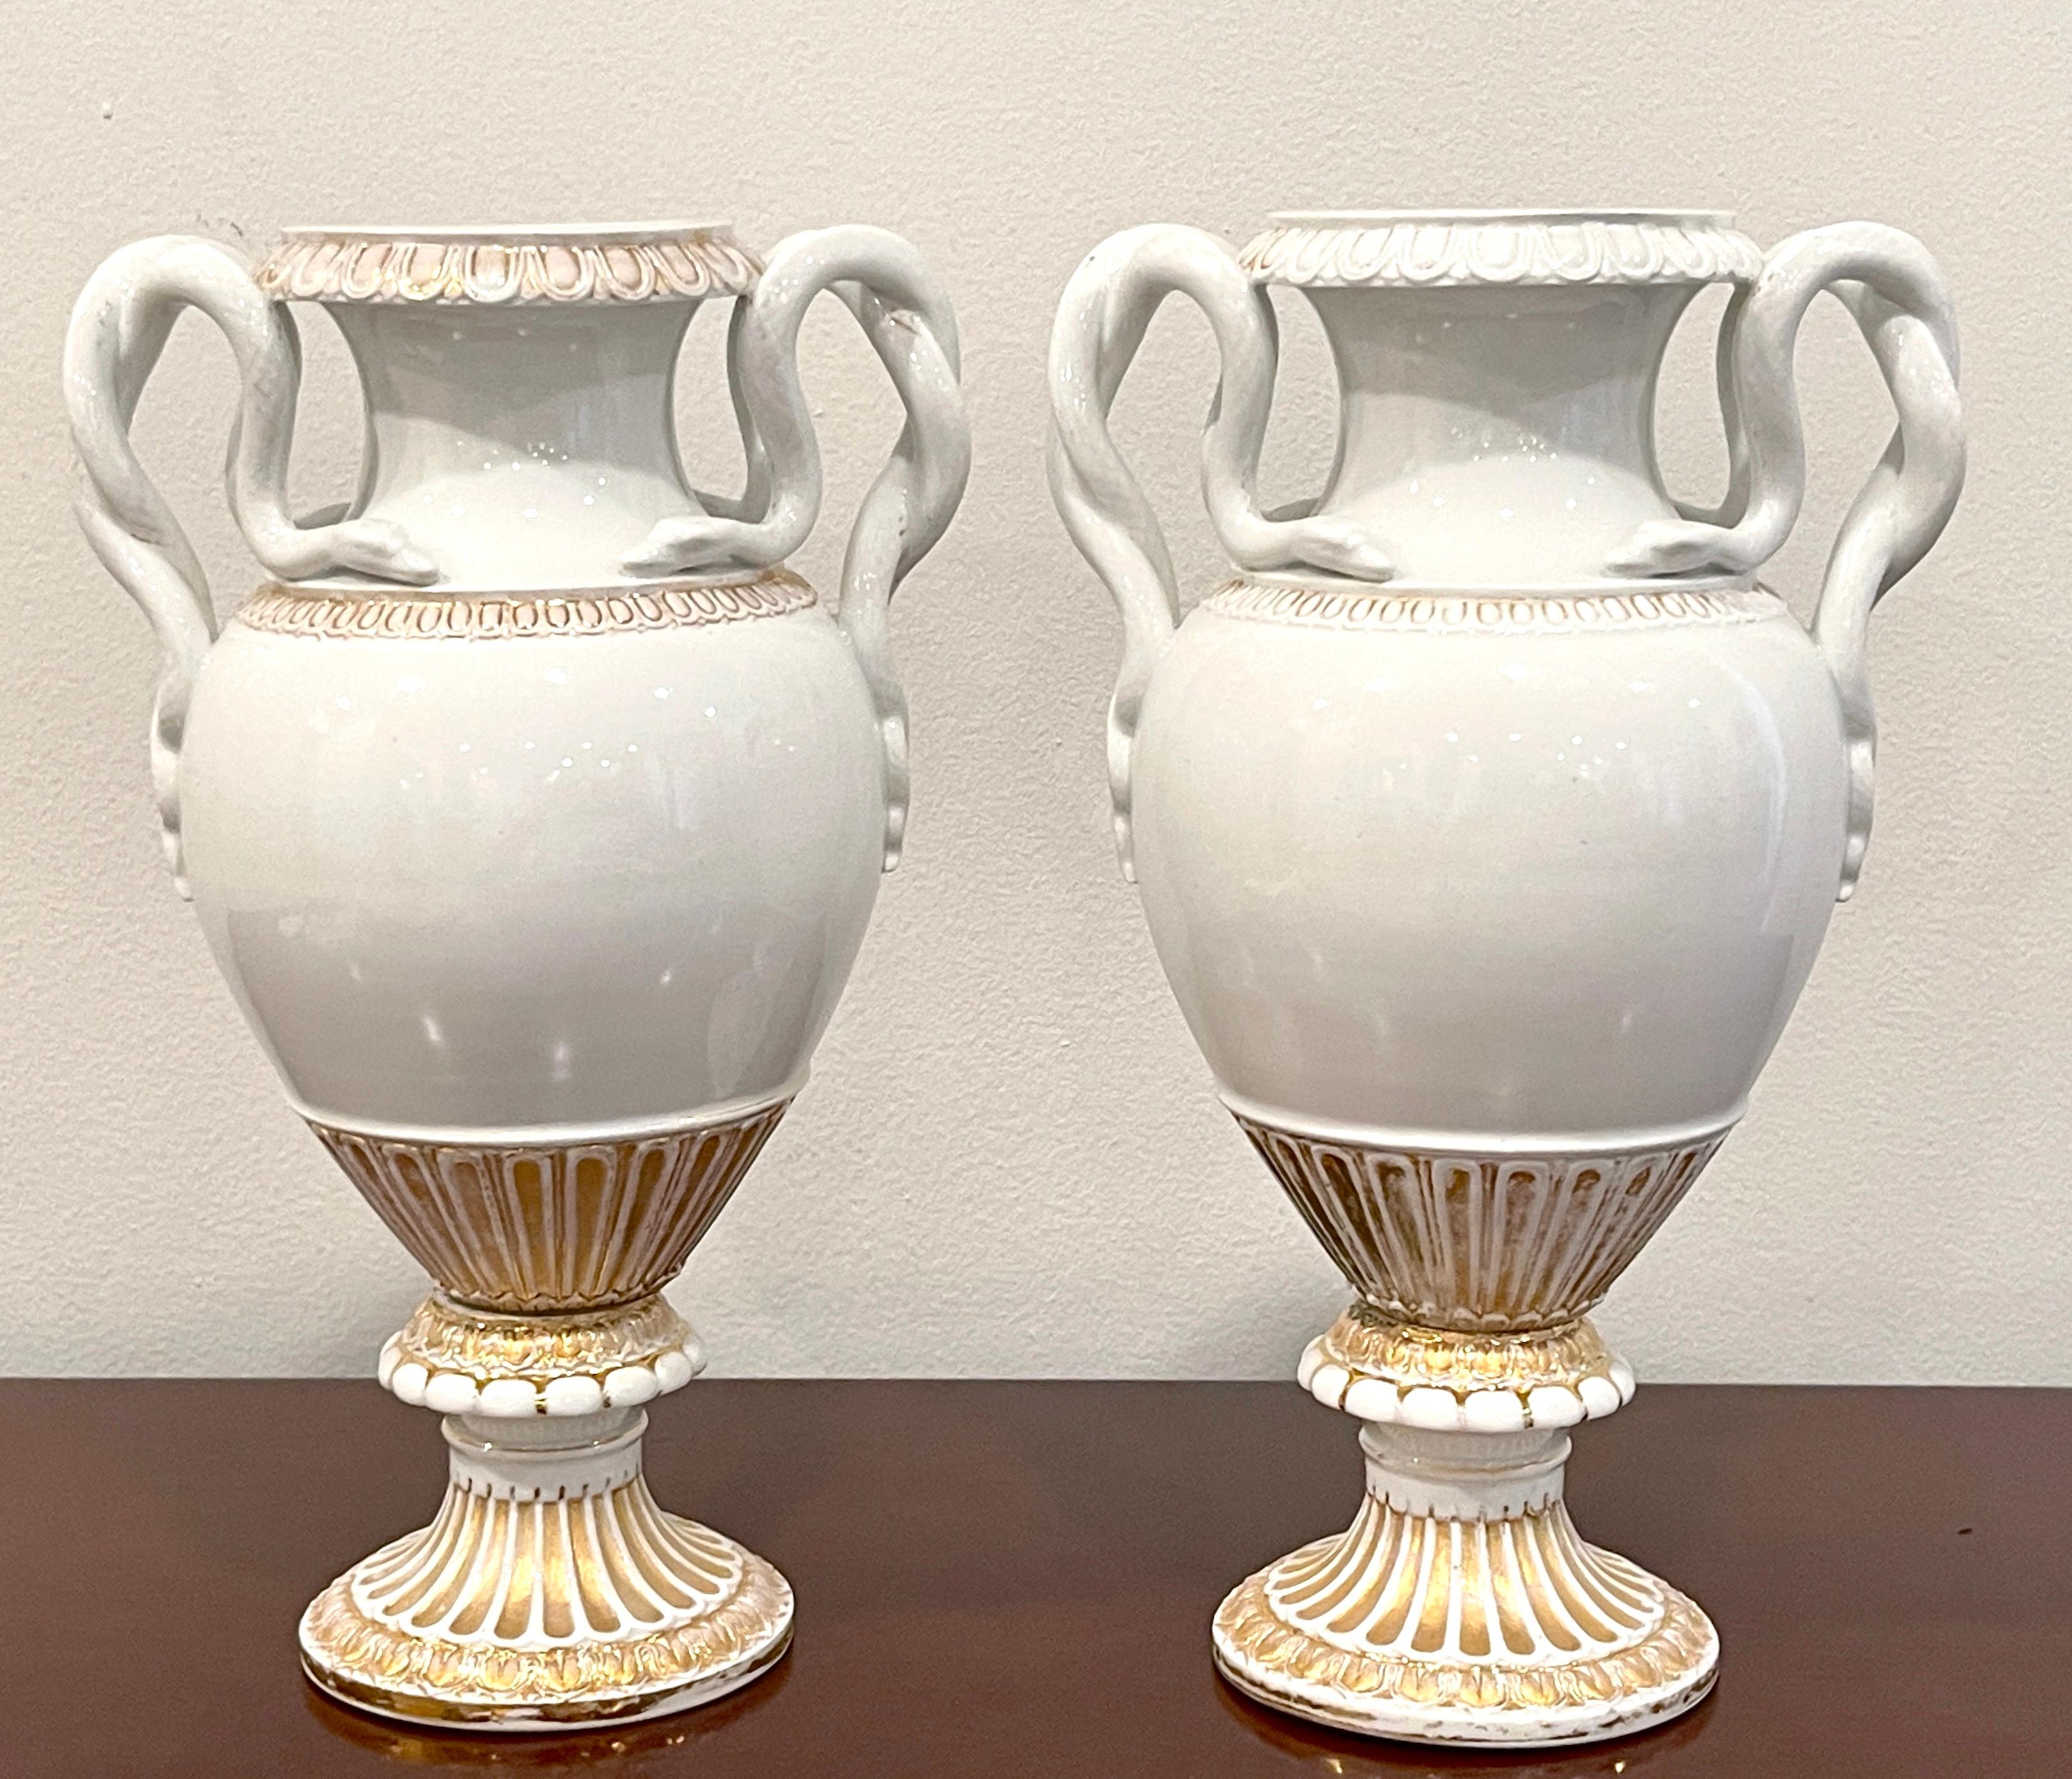 Paire de vases néoclassiques à poignée serpent en or et blanc de Meissen du 19e siècle.
Allemagne, vers les années 1880
Conception attribuée à E.A. Leuteritz 

Difficile de trouver une paire d'urnes néoclassiques Meissen discrètes, chacune avec